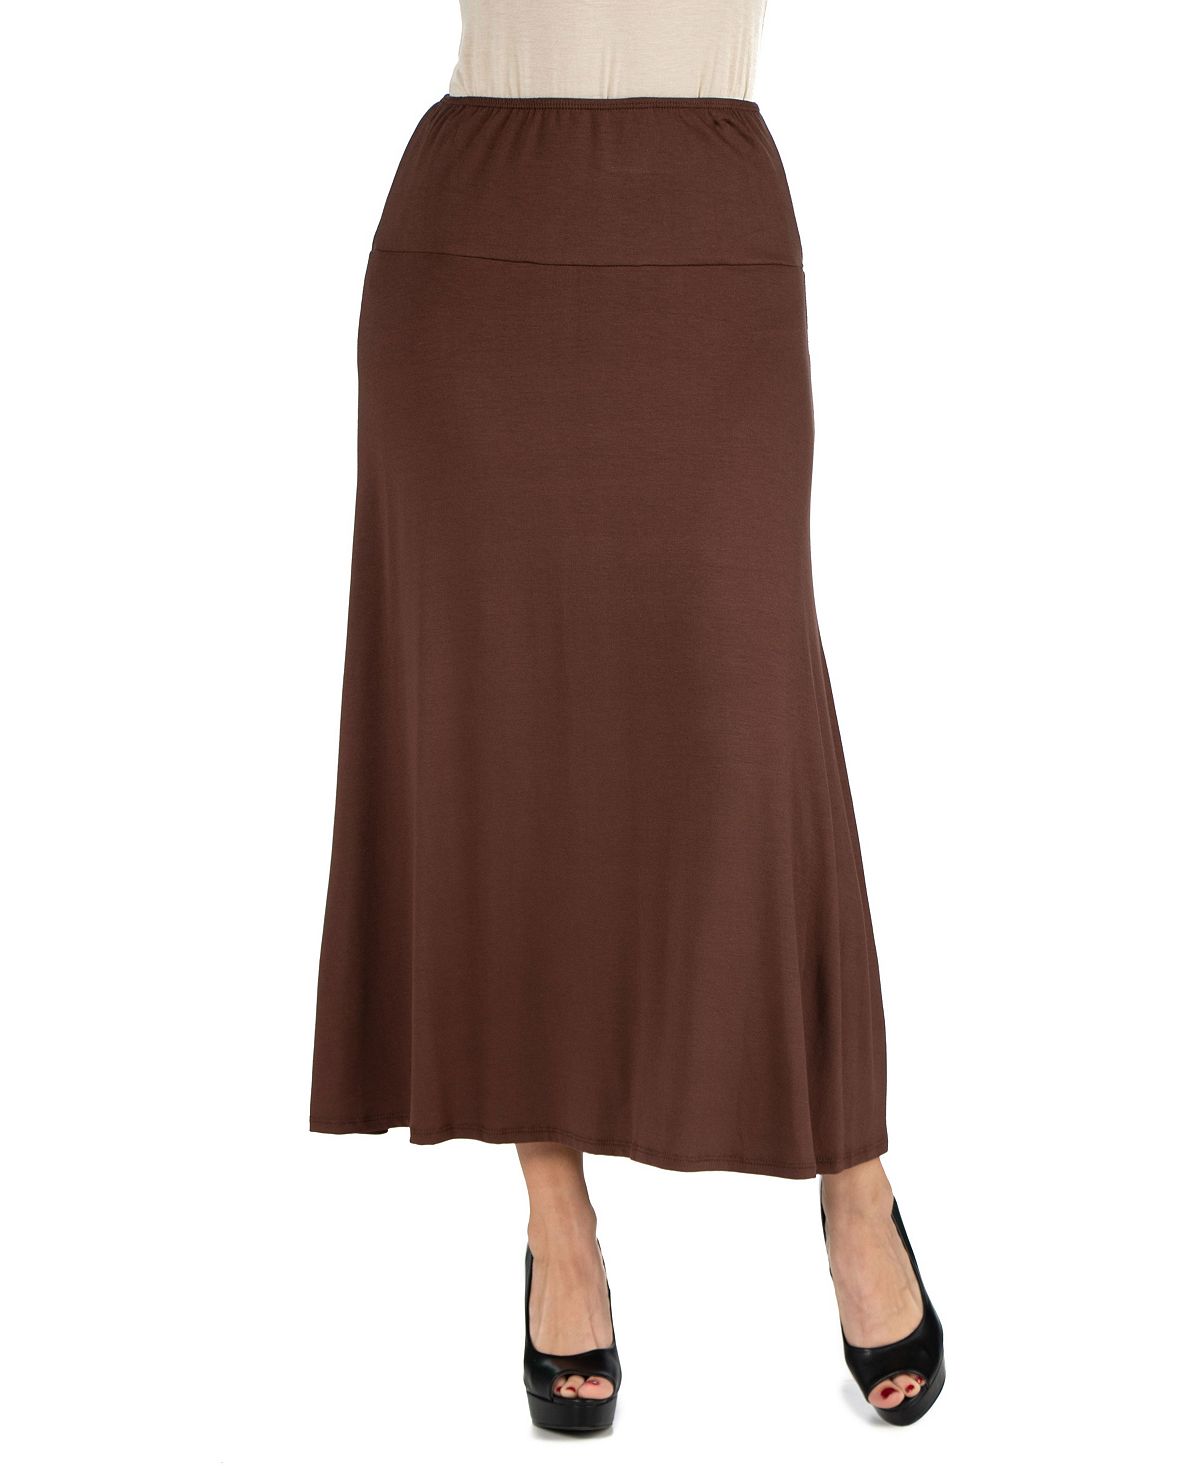 цена Женская макси-юбка с эластичной резинкой на талии 24seven Comfort Apparel, коричневый